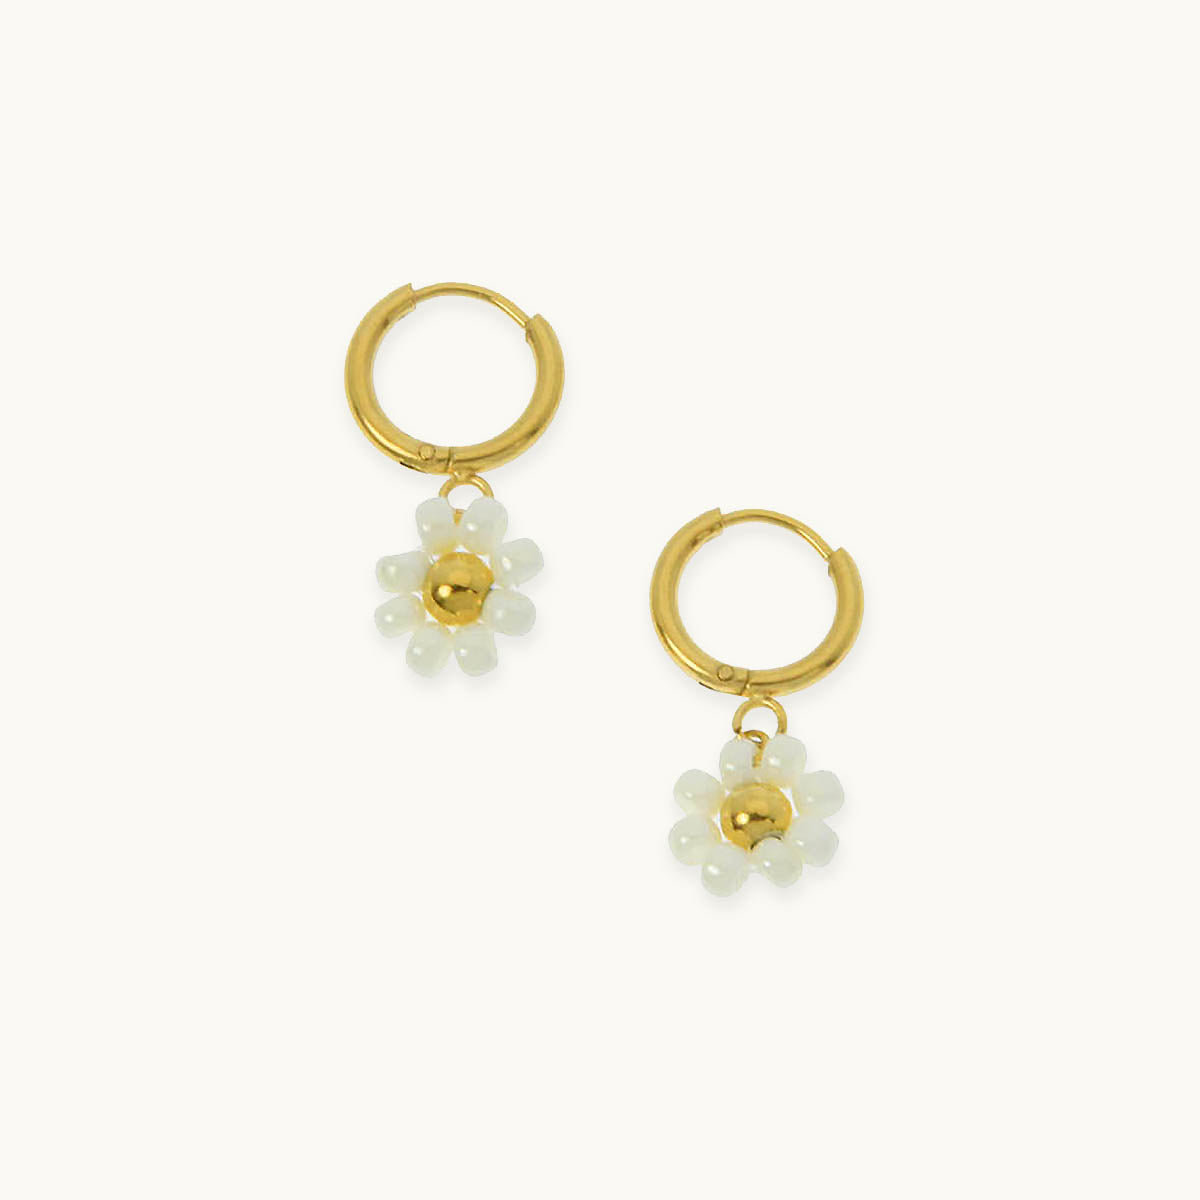 Prairie flower earrings